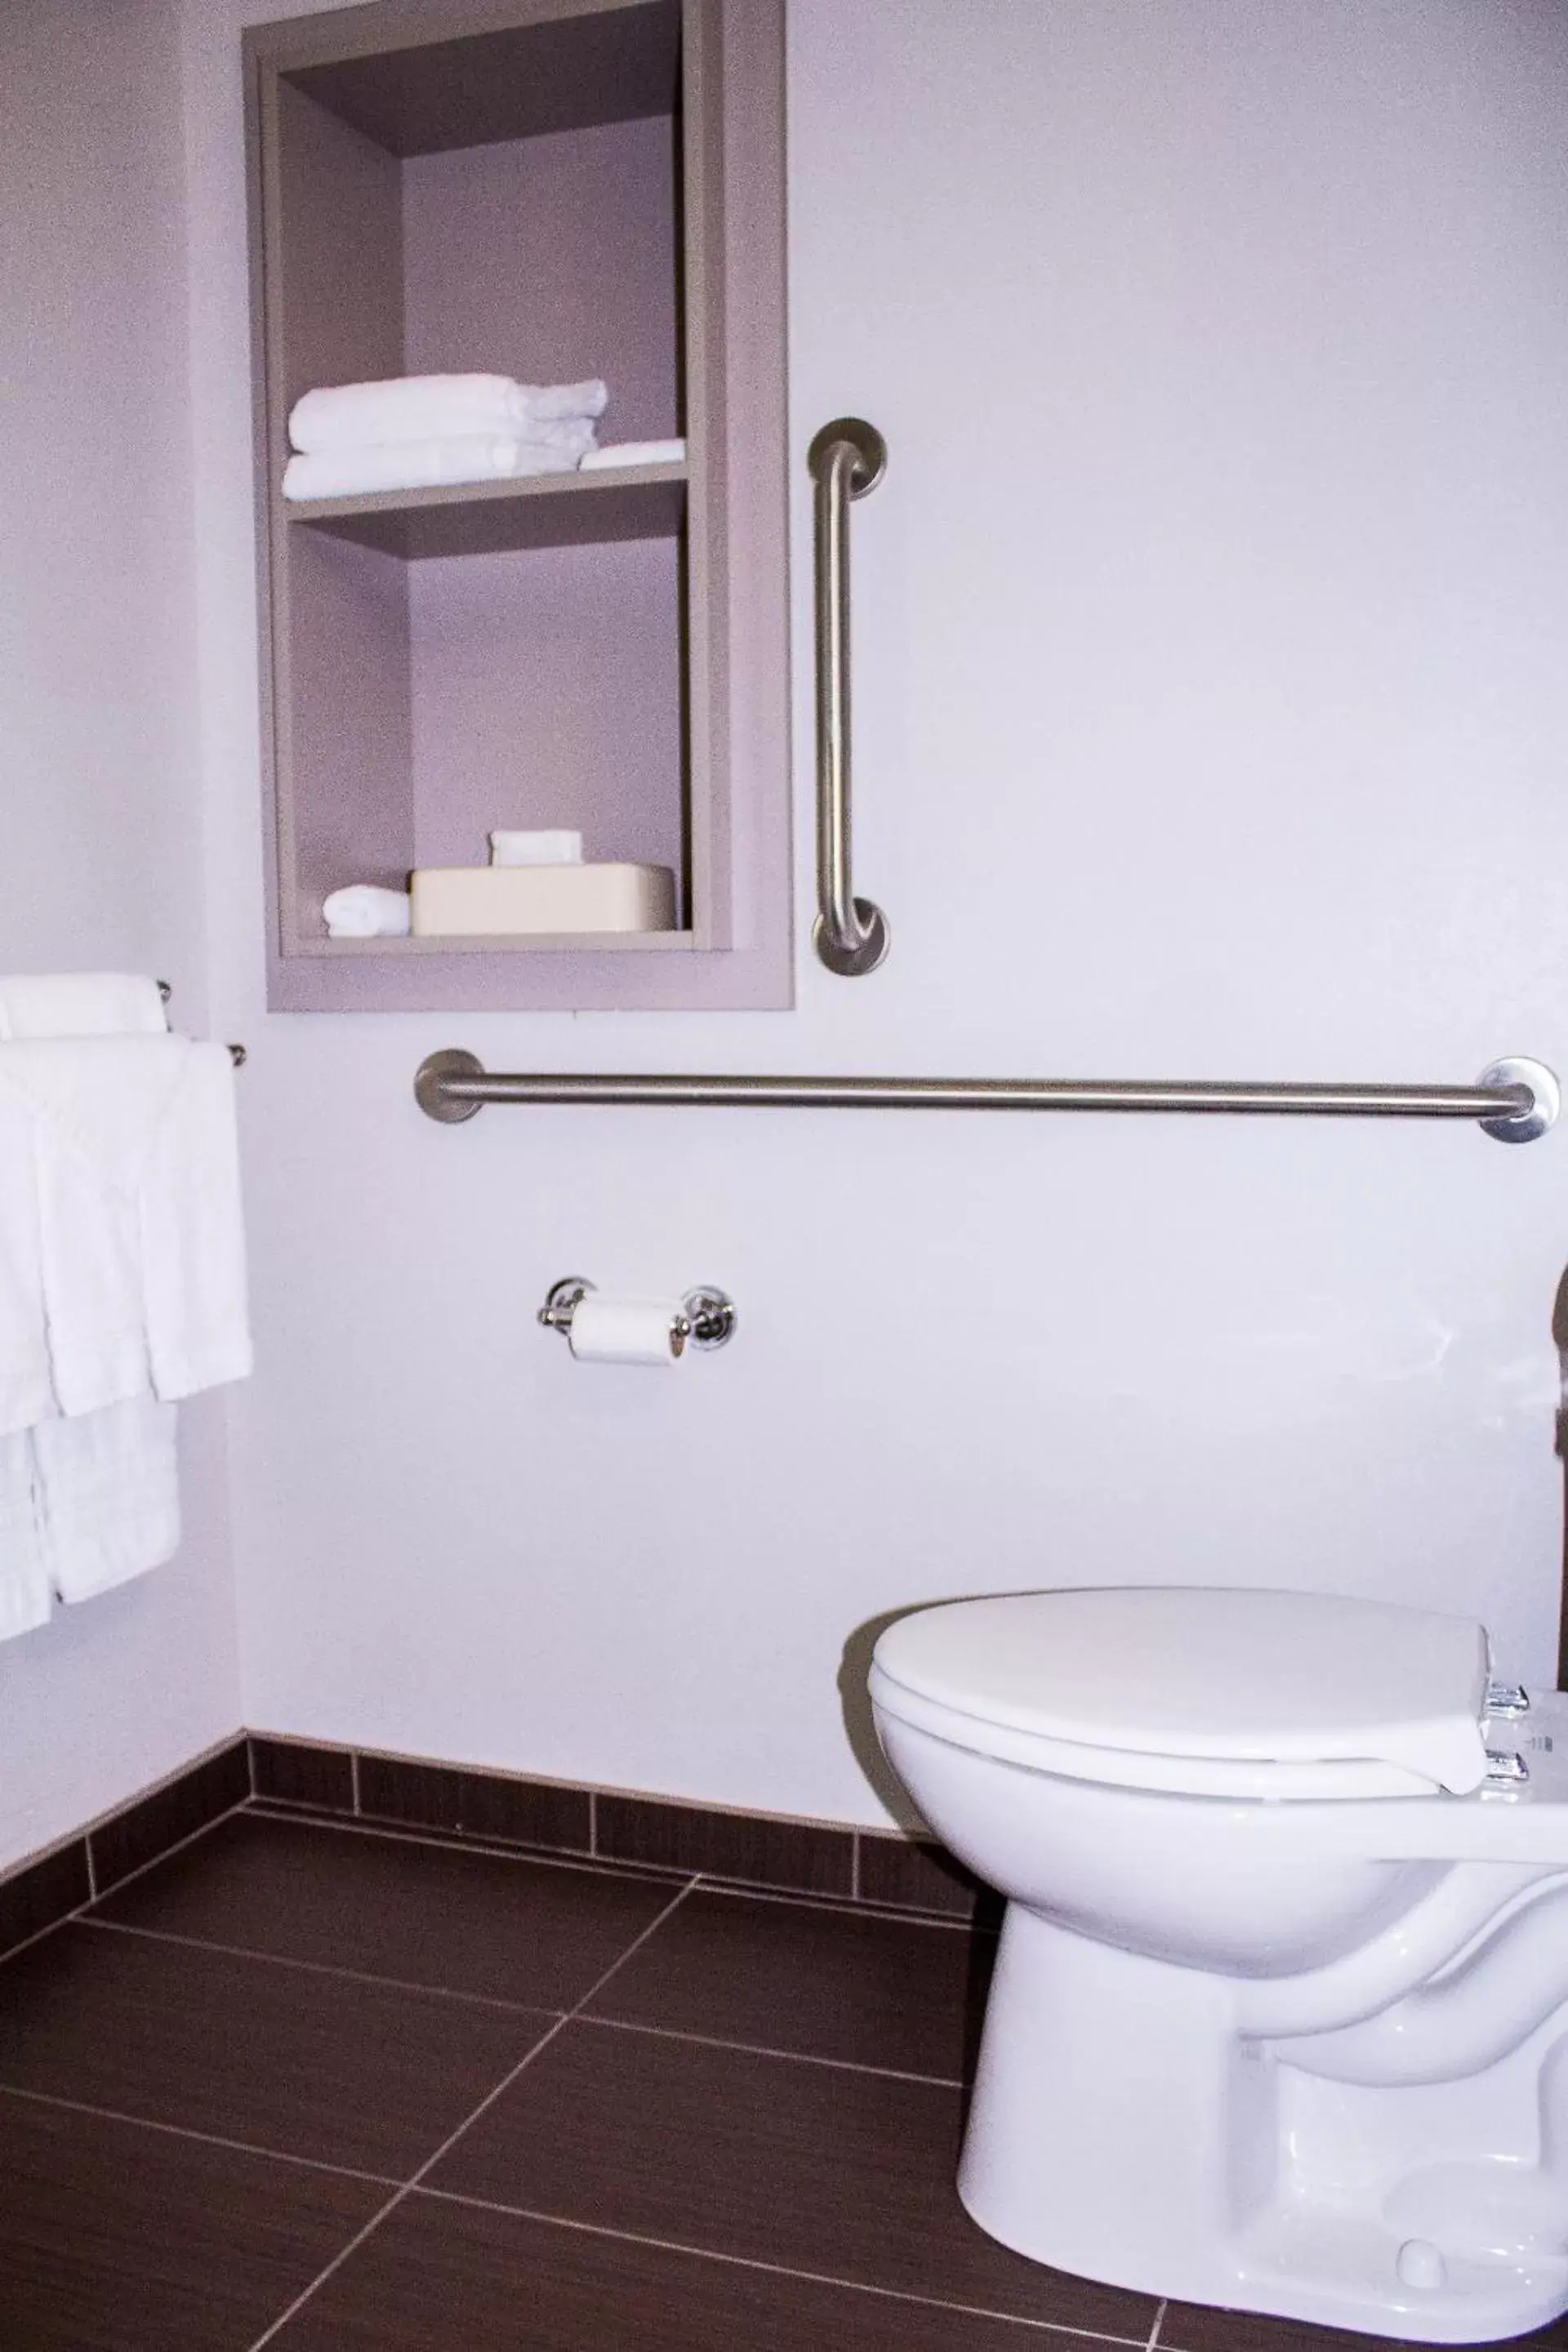 Toilet, Bathroom in Microtel Inn & Suites by Wyndham - Penn Yan